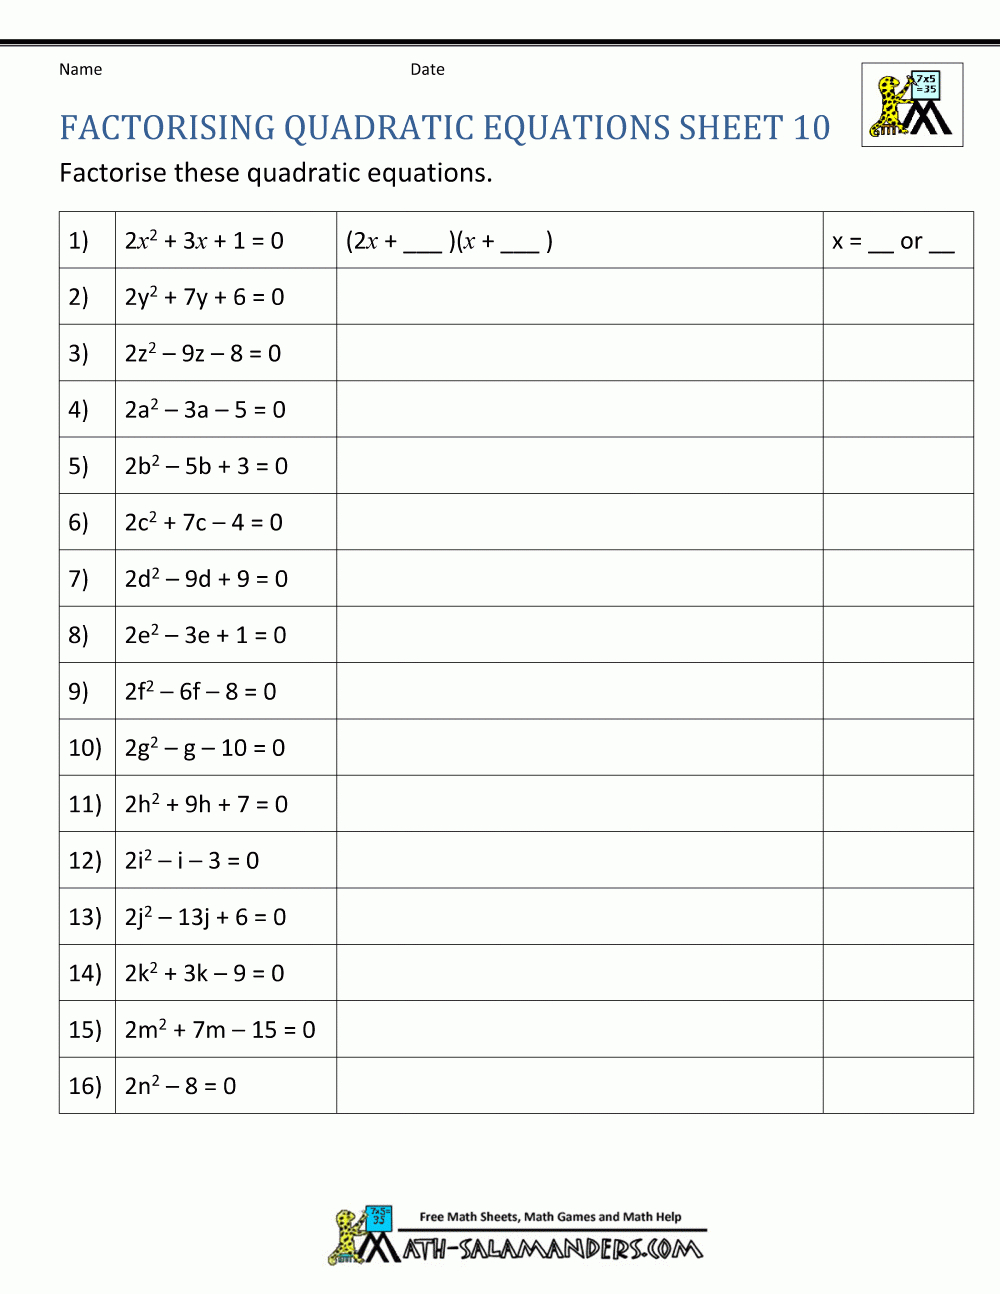 Homework Help Quadratic Equations Paid To Write Essays